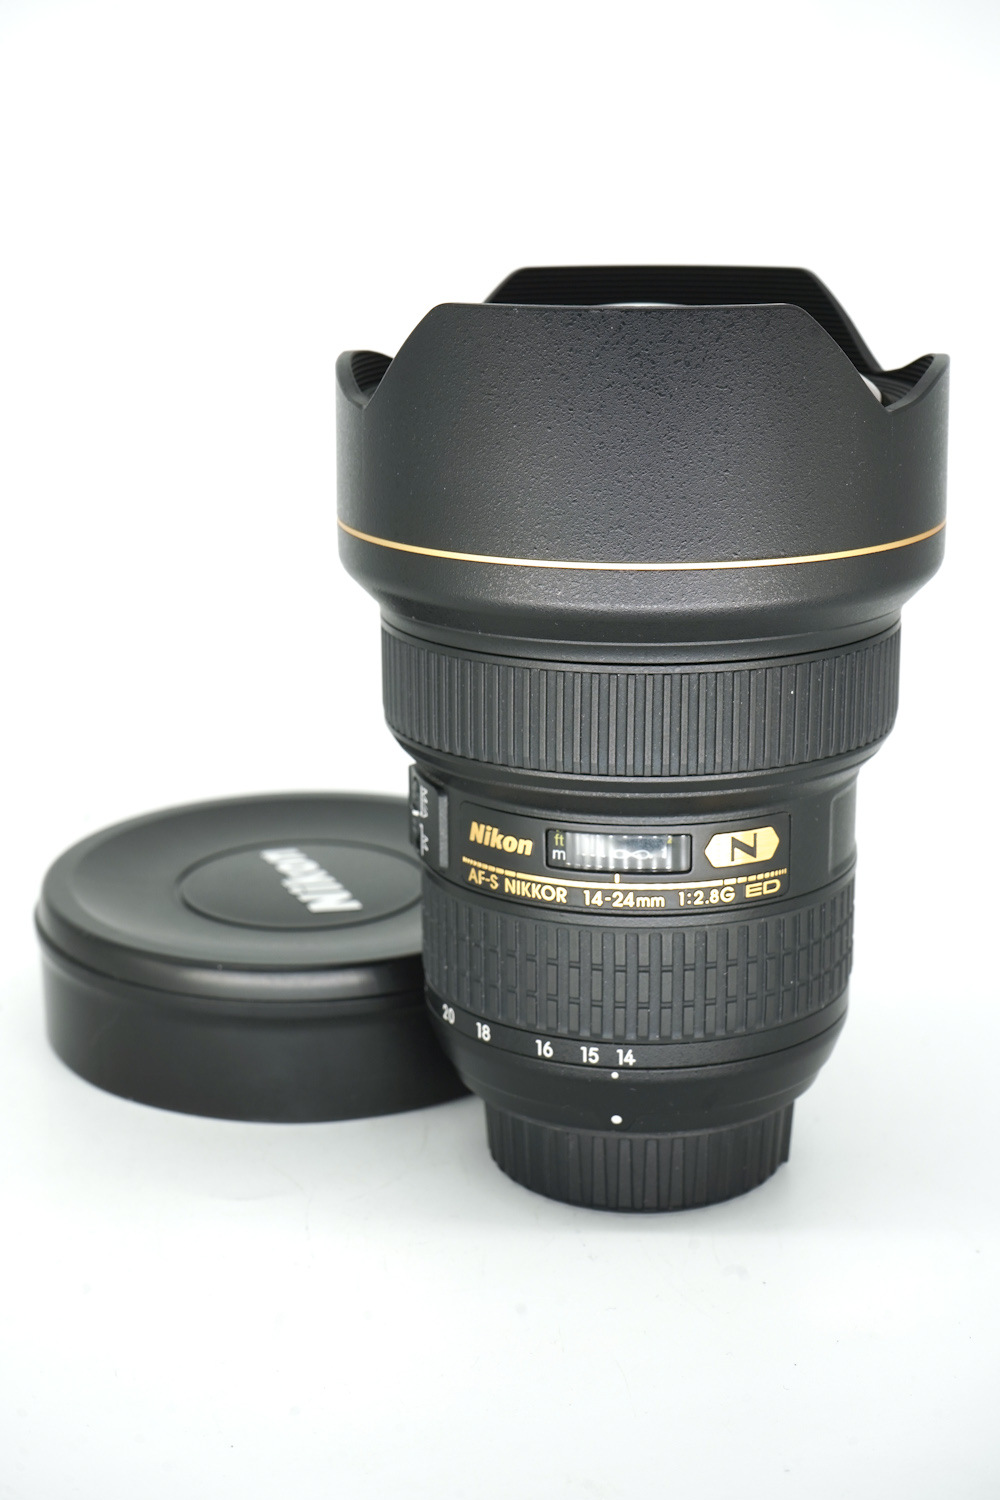  Nikon 14-24mm f/2.8G ED AF-S Nikkor (/,  5)